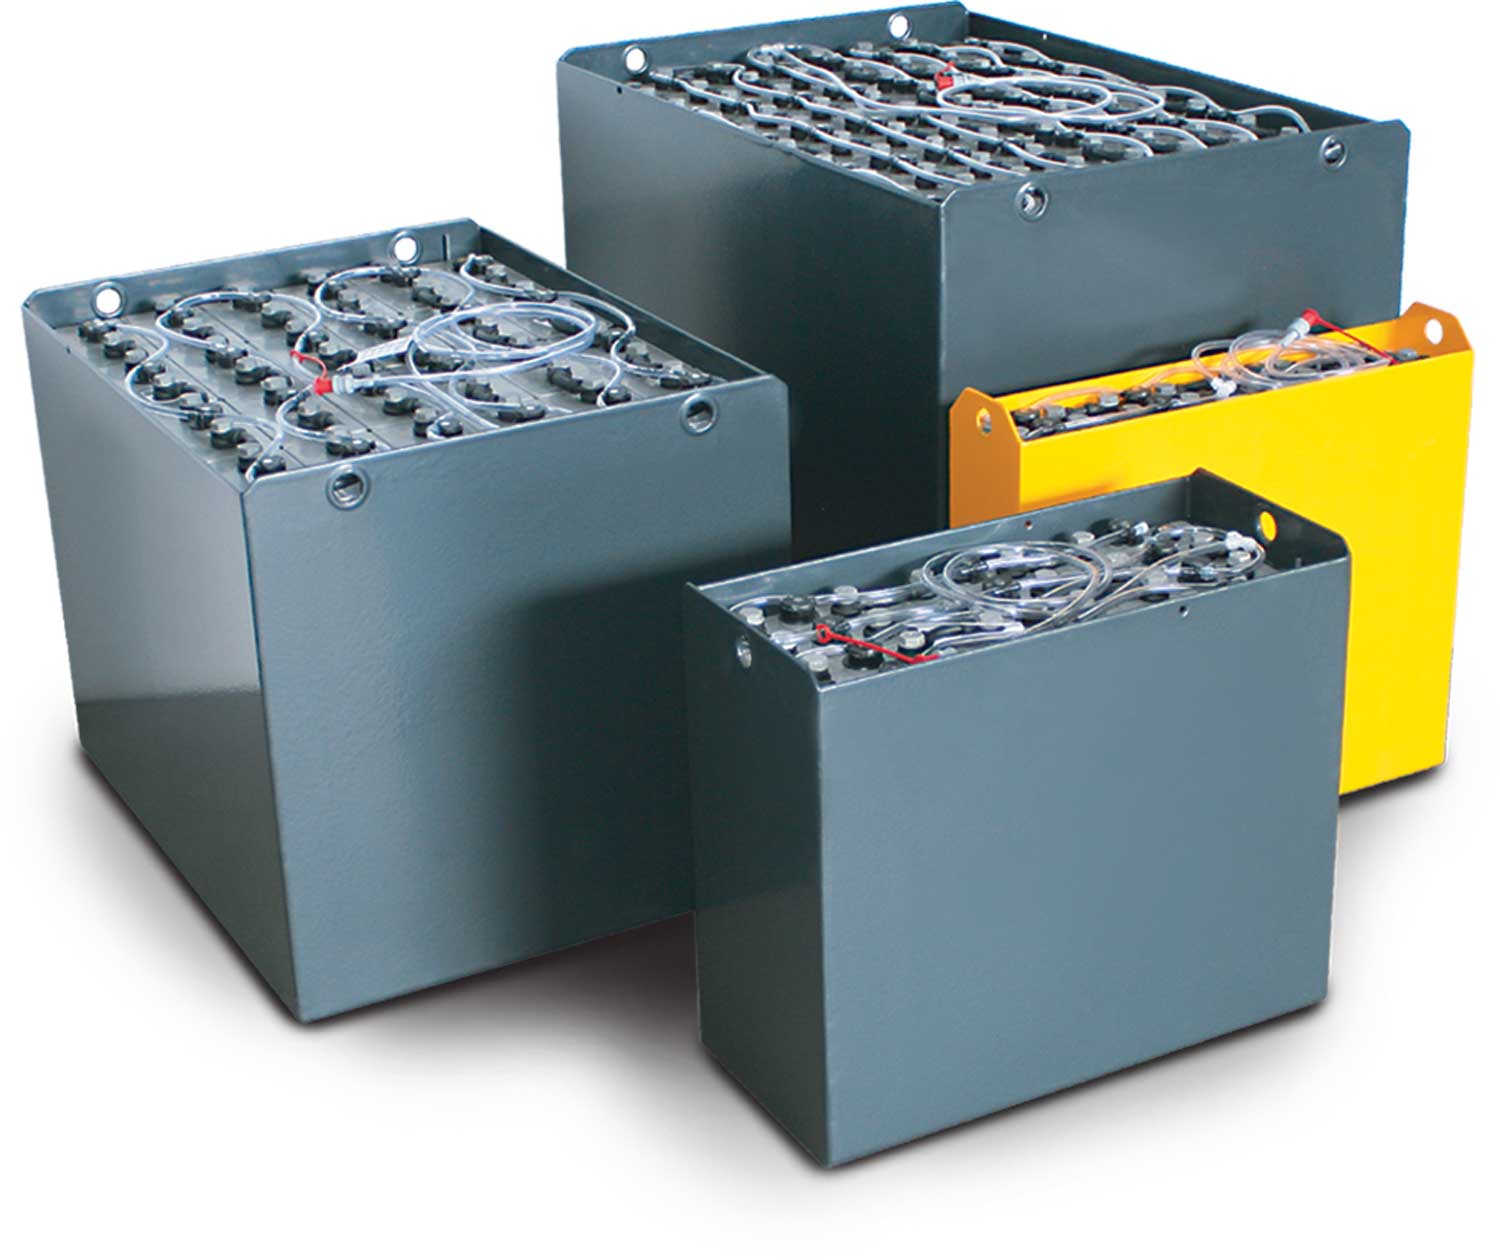 Q-Batteries 48V Gabelstaplerbatterie 5 PzS 625 DIN B (1027 x 526 x 627) Trog 57017033 inkl. Aquamatik